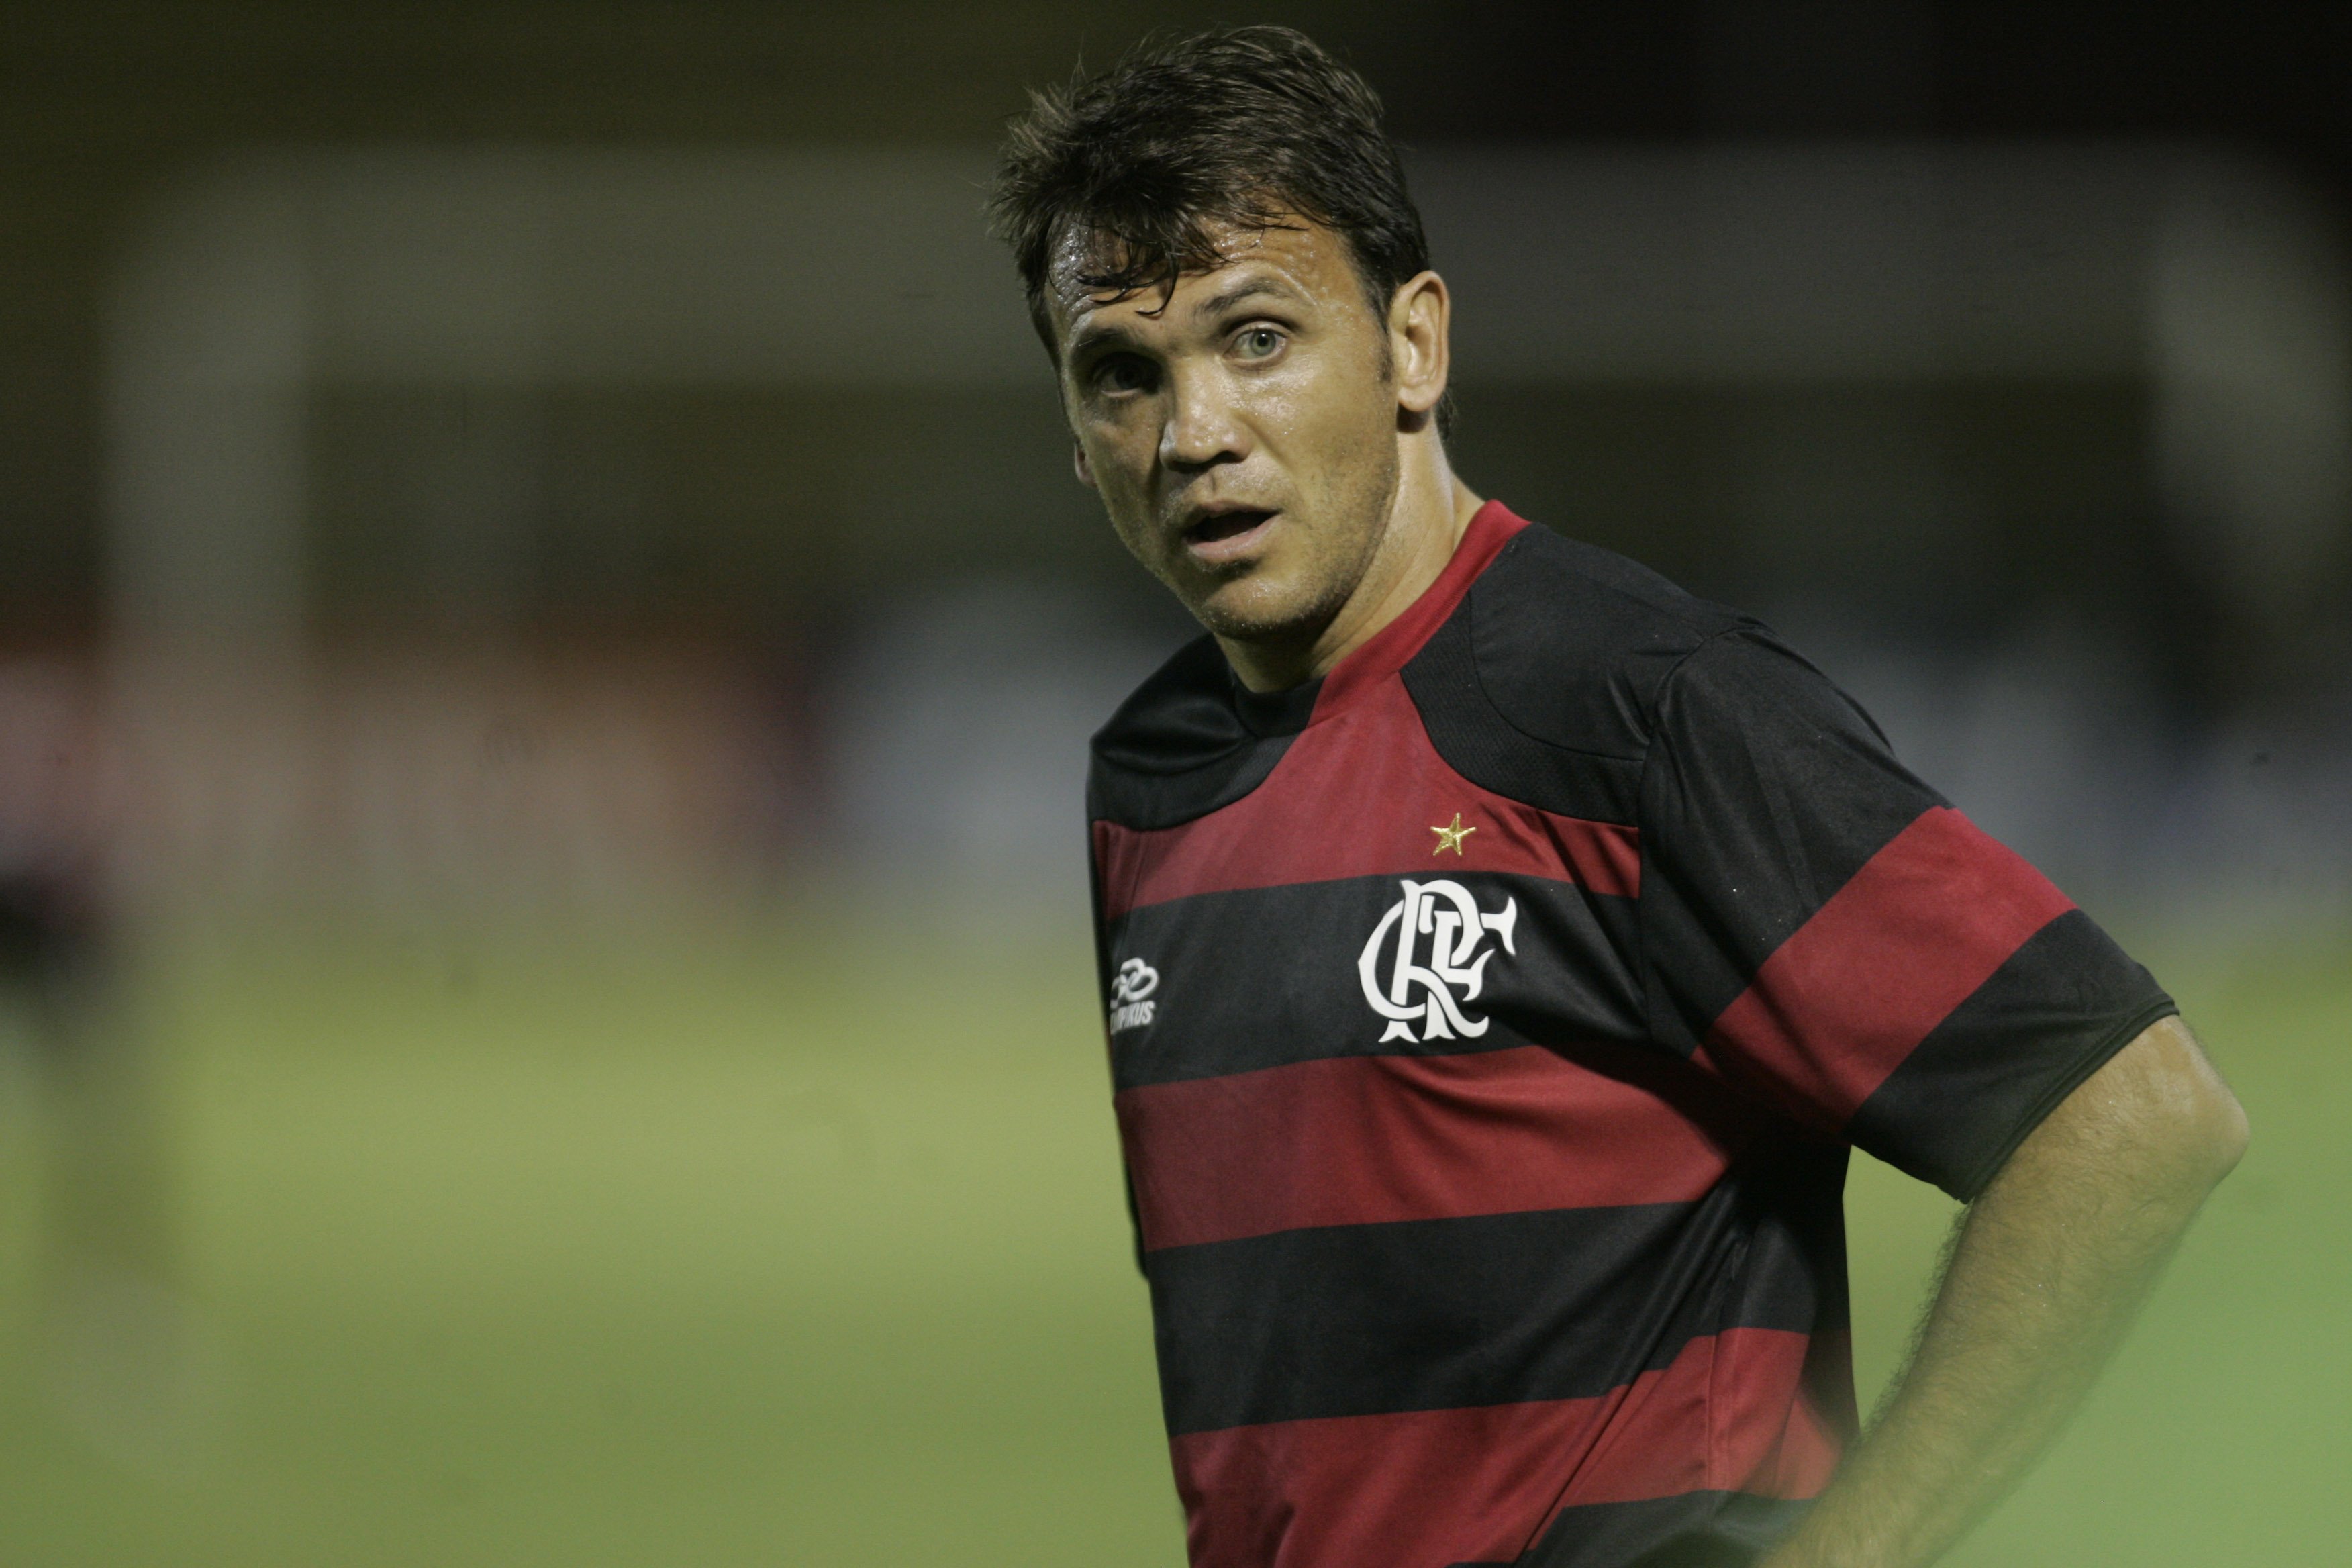 Herói do Carioca 2001 e peça fundamental no Hexa de 2009, o meia sérvio atuou 196 jogos com a camisa do Flamengo. Ele teve duas passagens pelo clube: uma entre 2000 e 2002 e outra de 2009 a 2011.